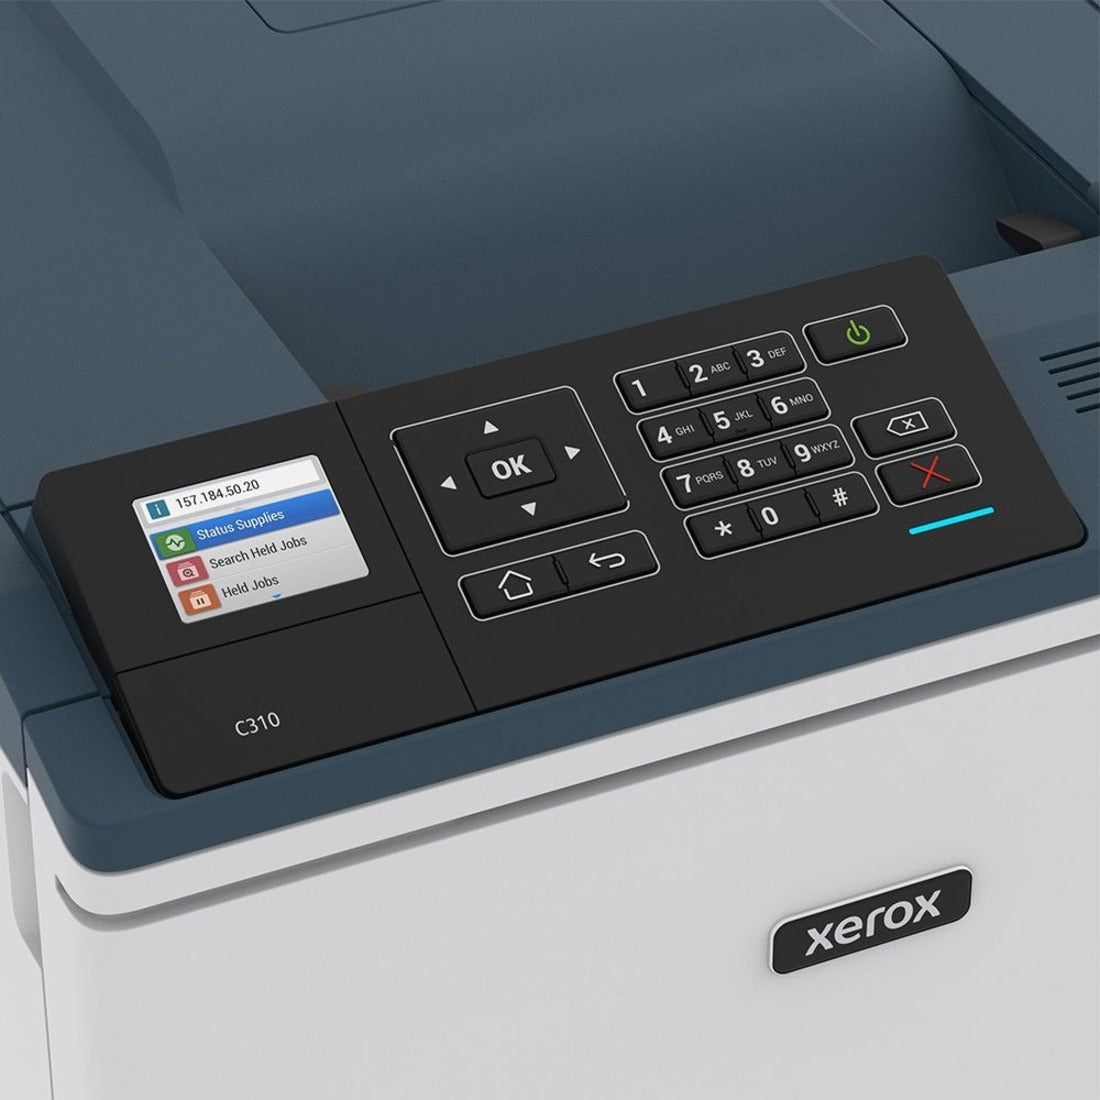 Xerox C310 / DNI Imprimante laser couleur C310 sans fil impression recto verso automatique 35 ppm 1200 x 1200 ppp